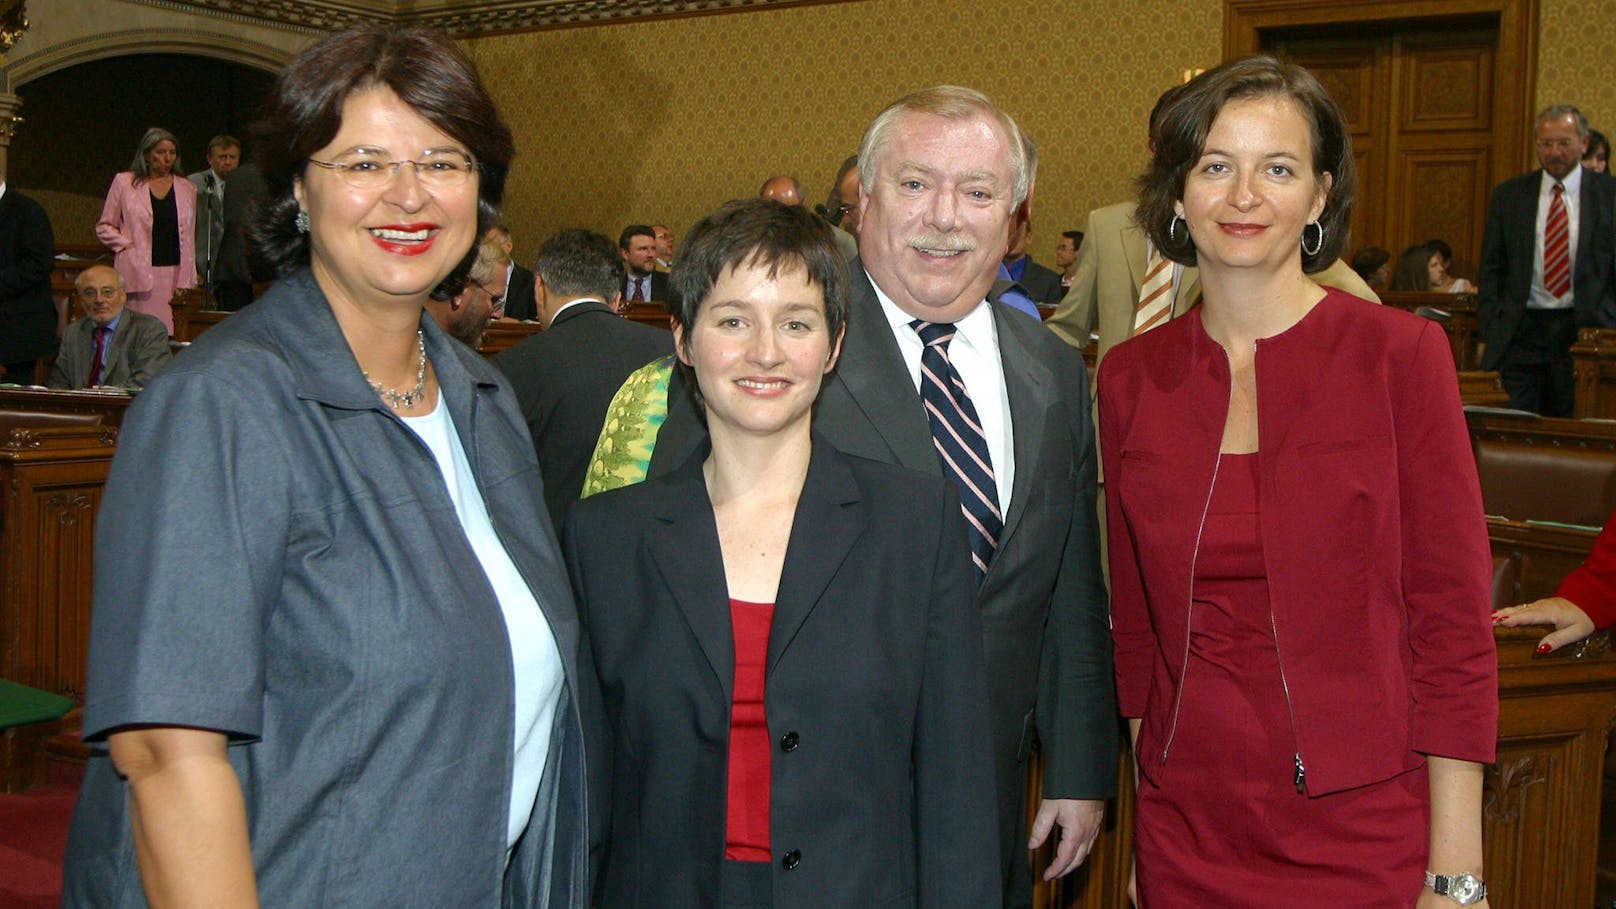 Bei der Amtseinführung am 1. Juli 2004: Umweltstadträtin Ulli Sima mit Finanzstadträtin Renate Brauner, Gesundheitsstadträtin Sonja Wehsely und Bürgermeister Michael Häupl (alle SPÖ)